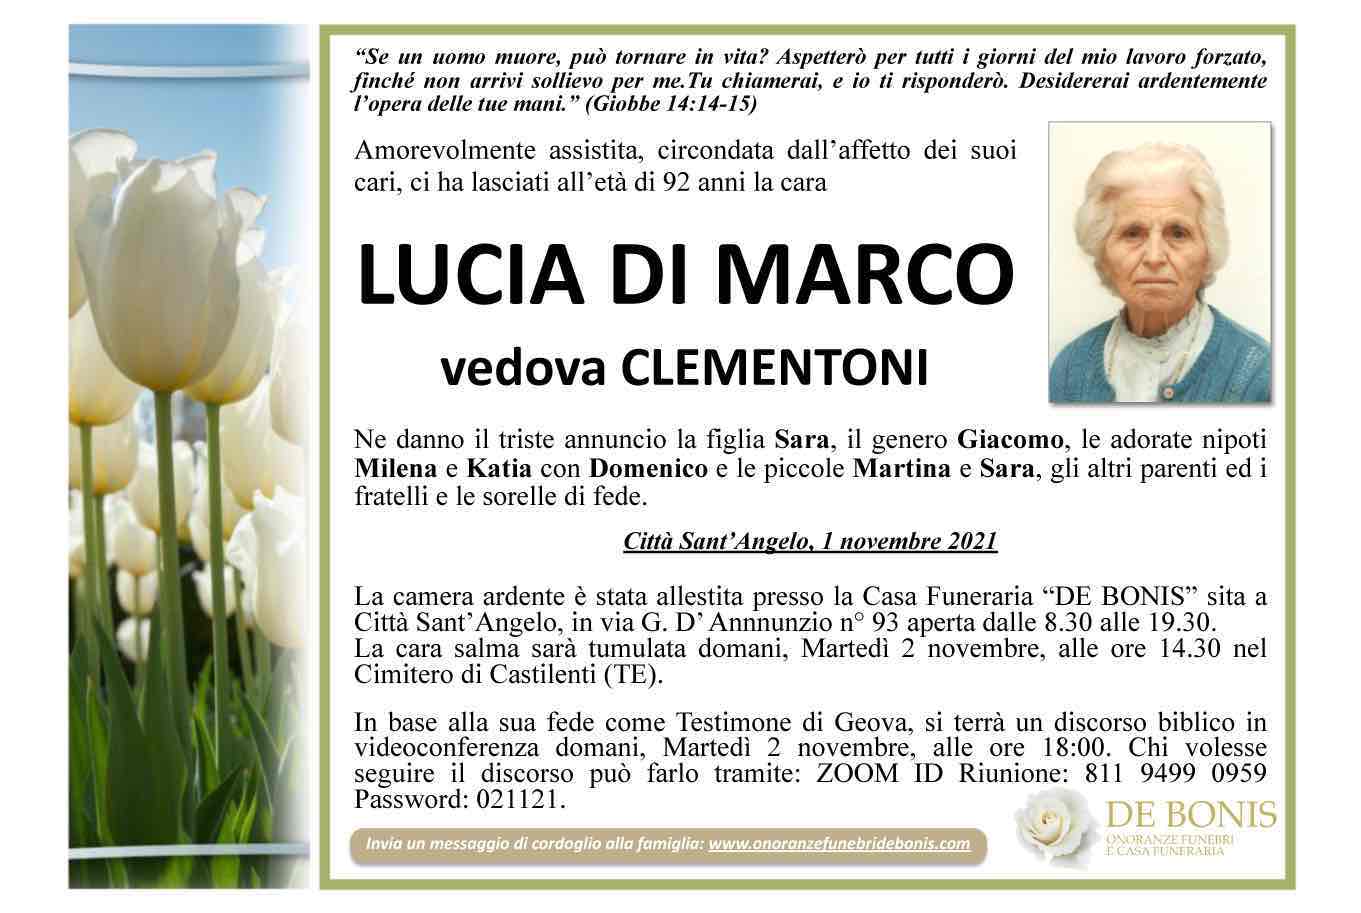 Lucia Di Marco